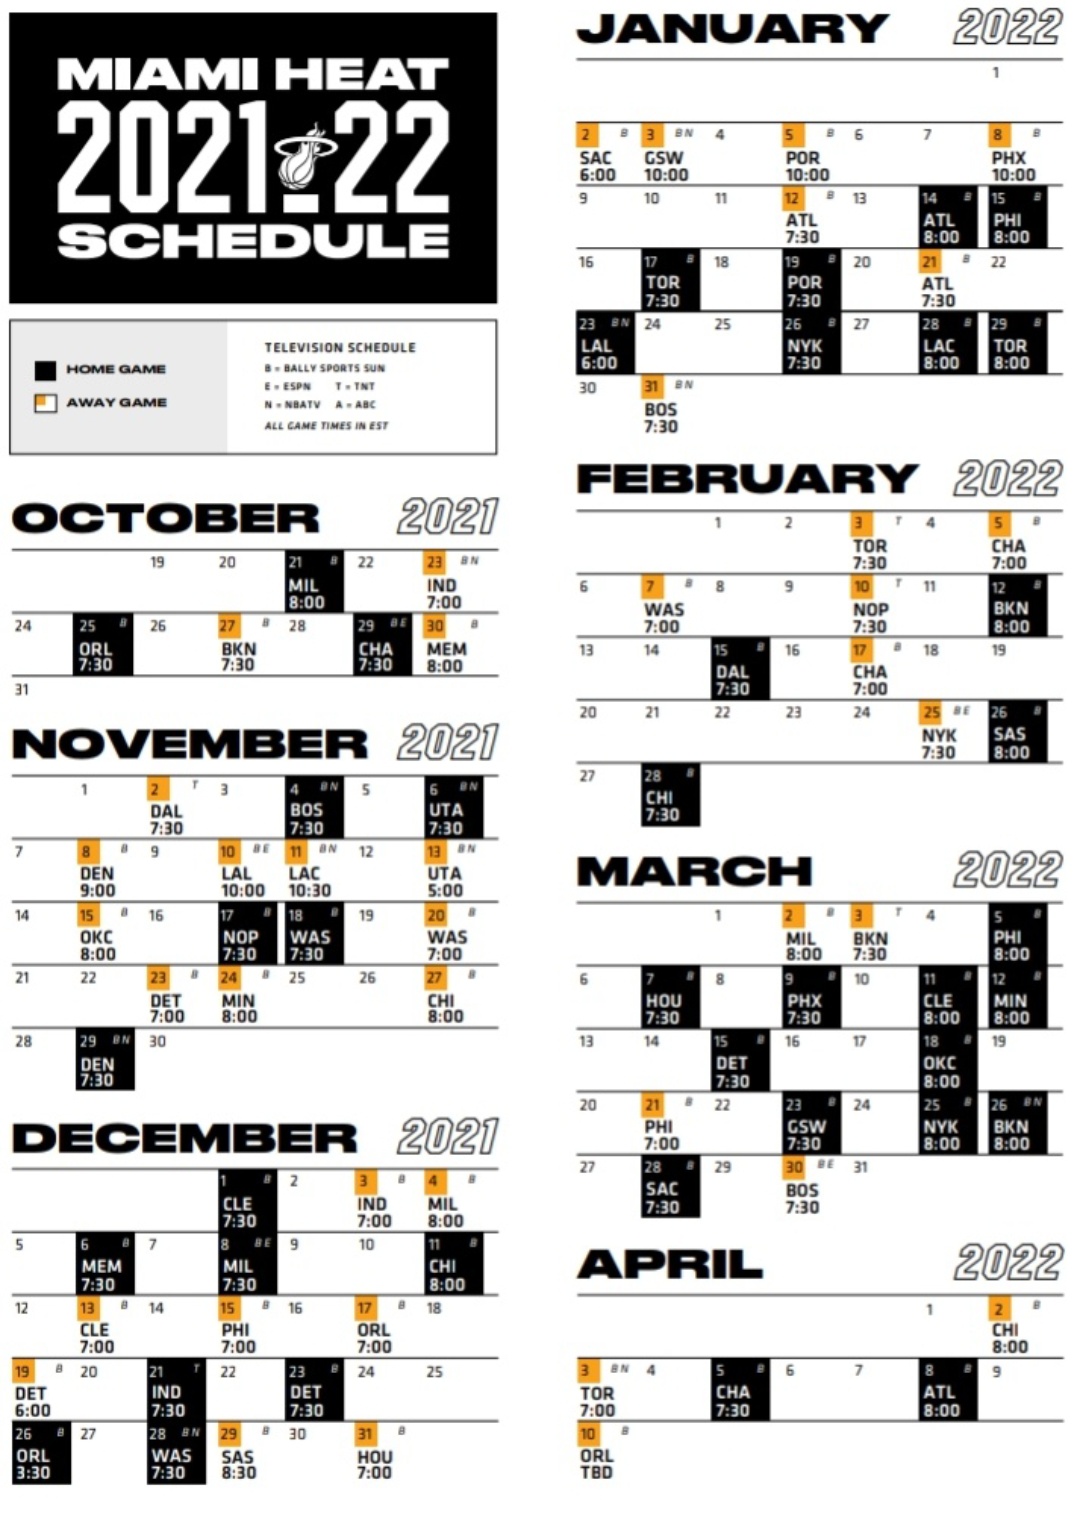 Miami Heat schedule